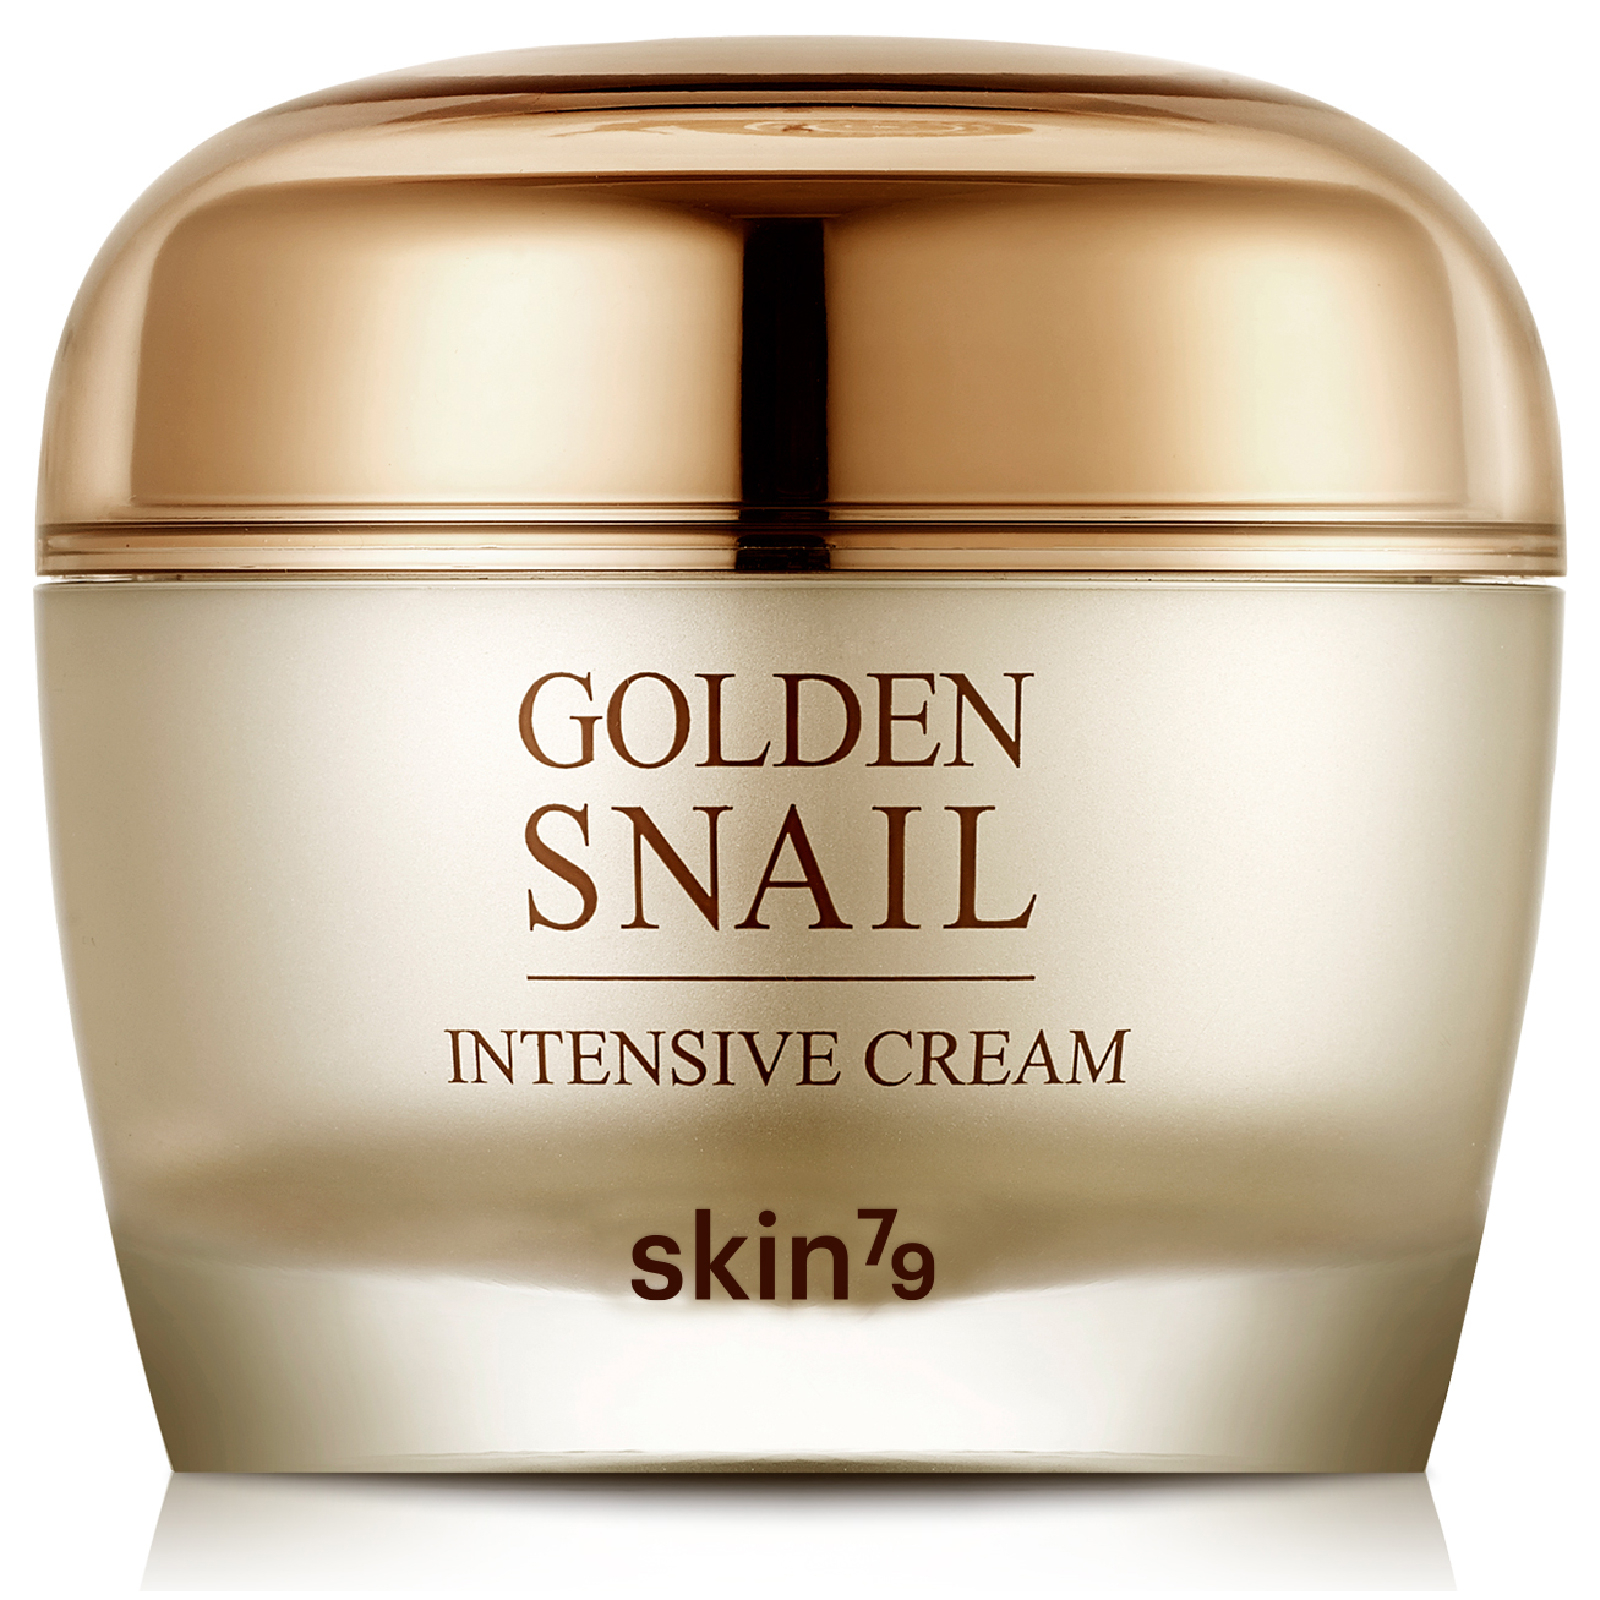 Crema intensiva Golden Snail de Skin79 50 g